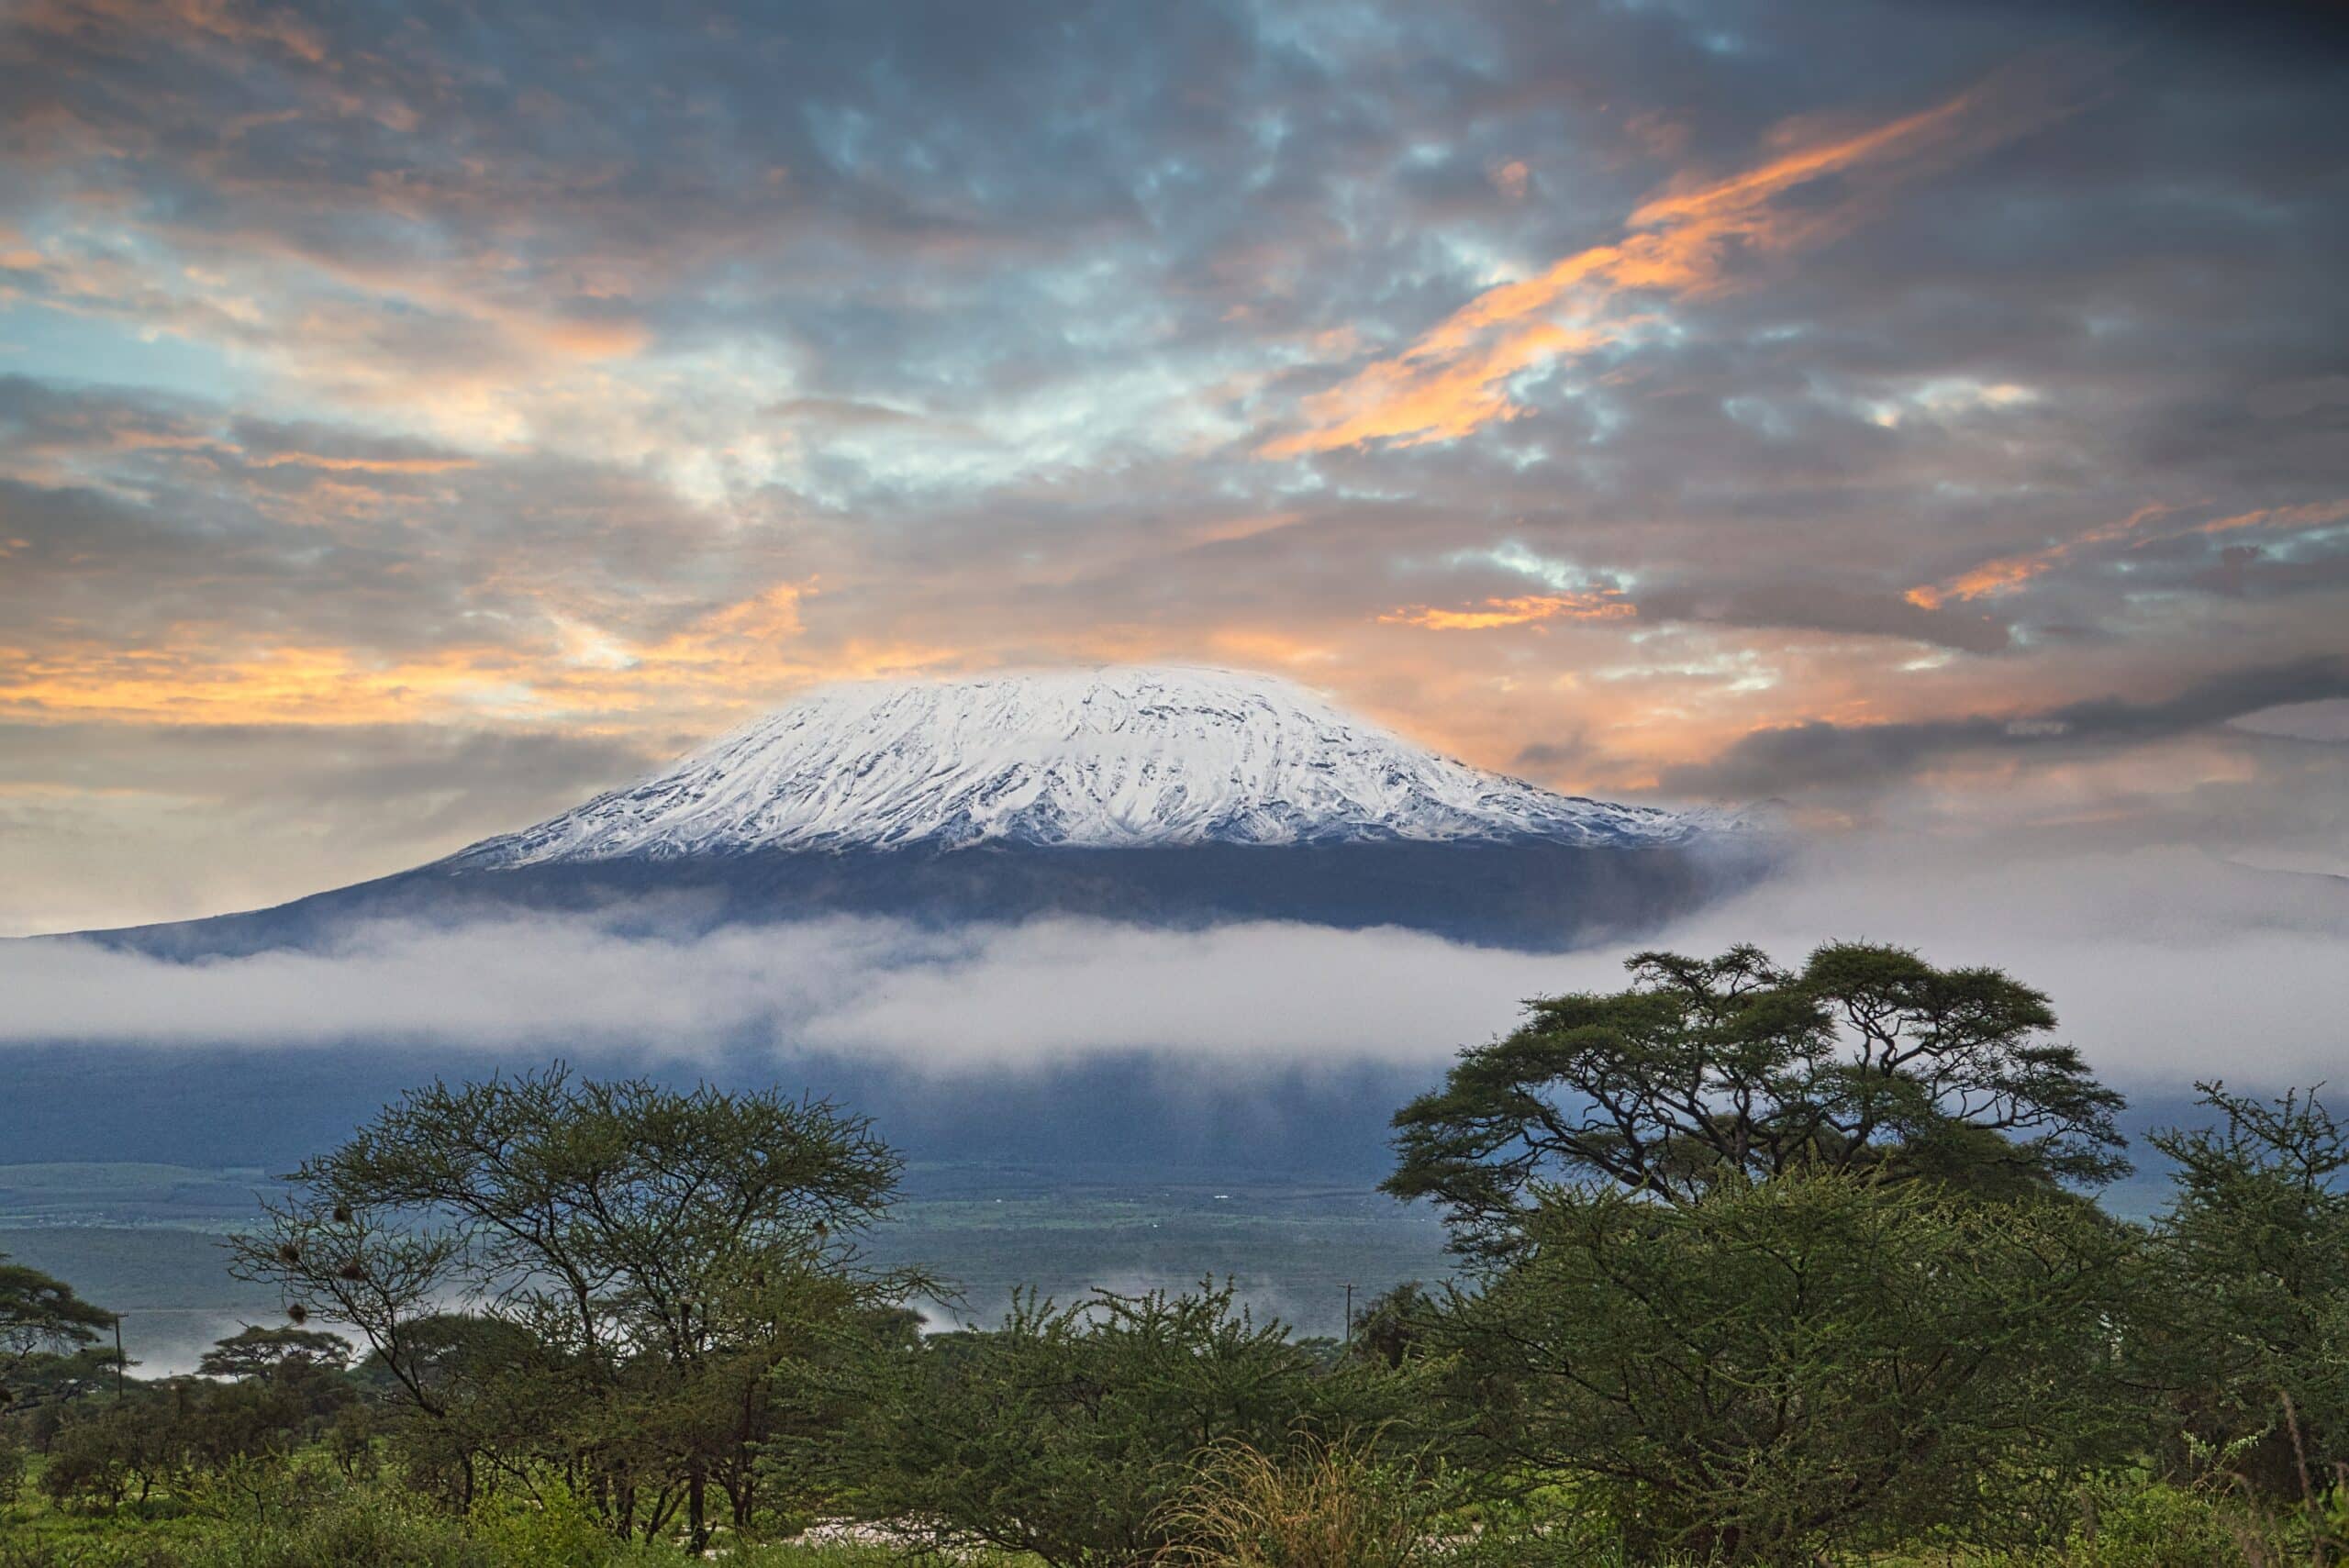 Topputsikt över berget Kilimanjaro från västra Kilimanjaro